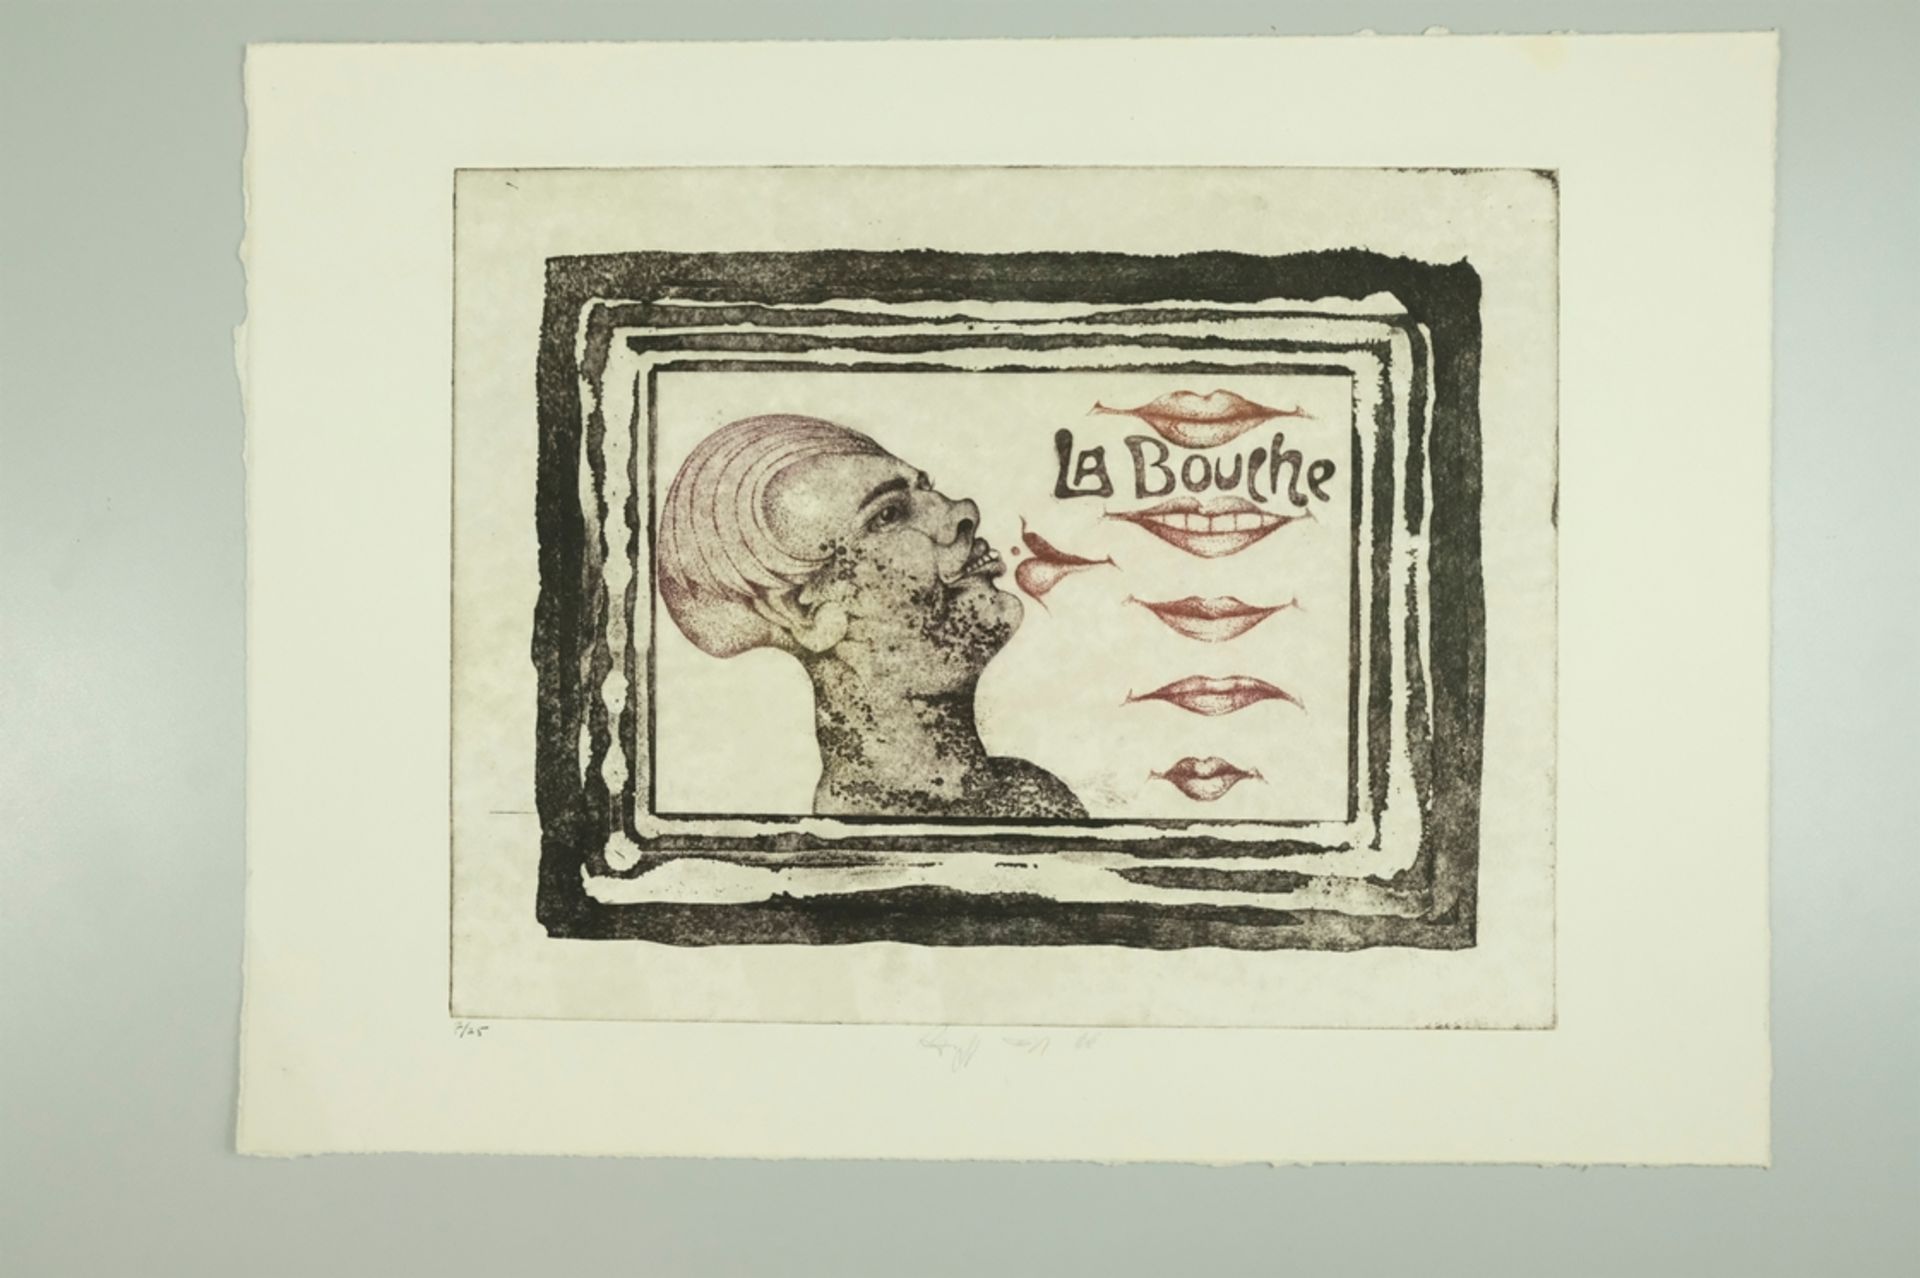 EGGERS W.P. Eberhard "La Bouche", zu Deutsch der Mund, Abbildung eines Kopfes mit vollen Lippen, da - Image 2 of 5